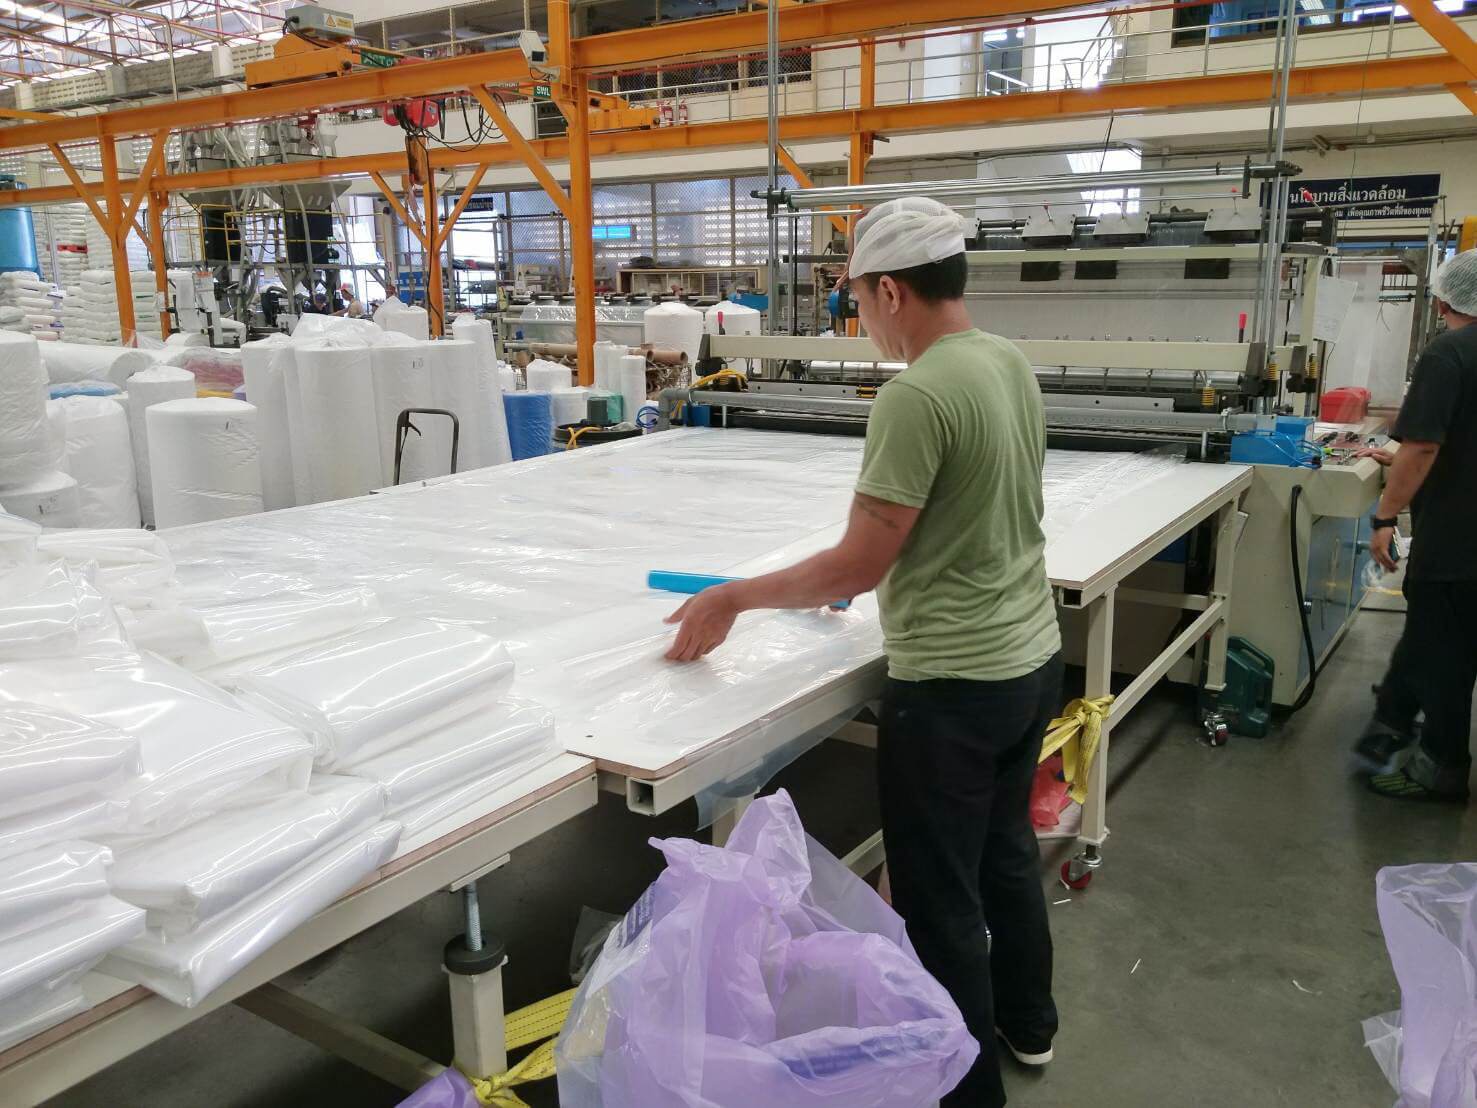 Khách hàng Thái Lan của chúng tôi đã đặt hàng một chiếc máy làm túi phẳng siêu dài để đáp ứng nhu cầu sản xuất túi trải giường